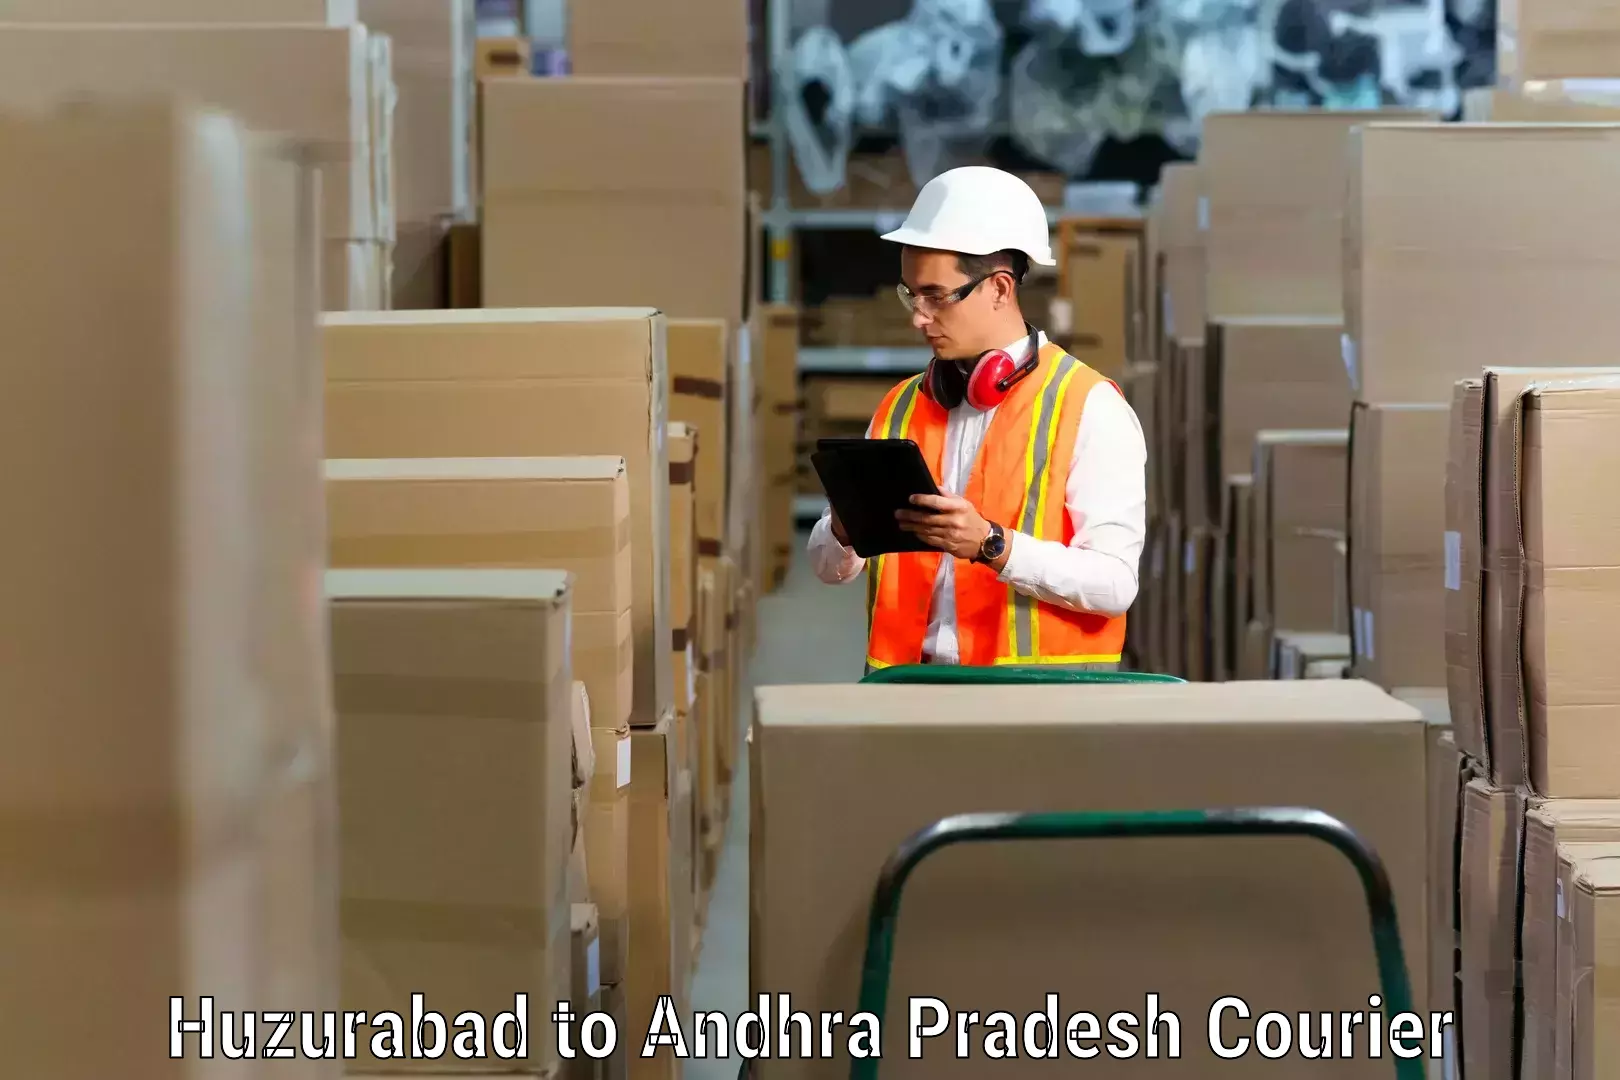 Professional furniture movers Huzurabad to Kakinada